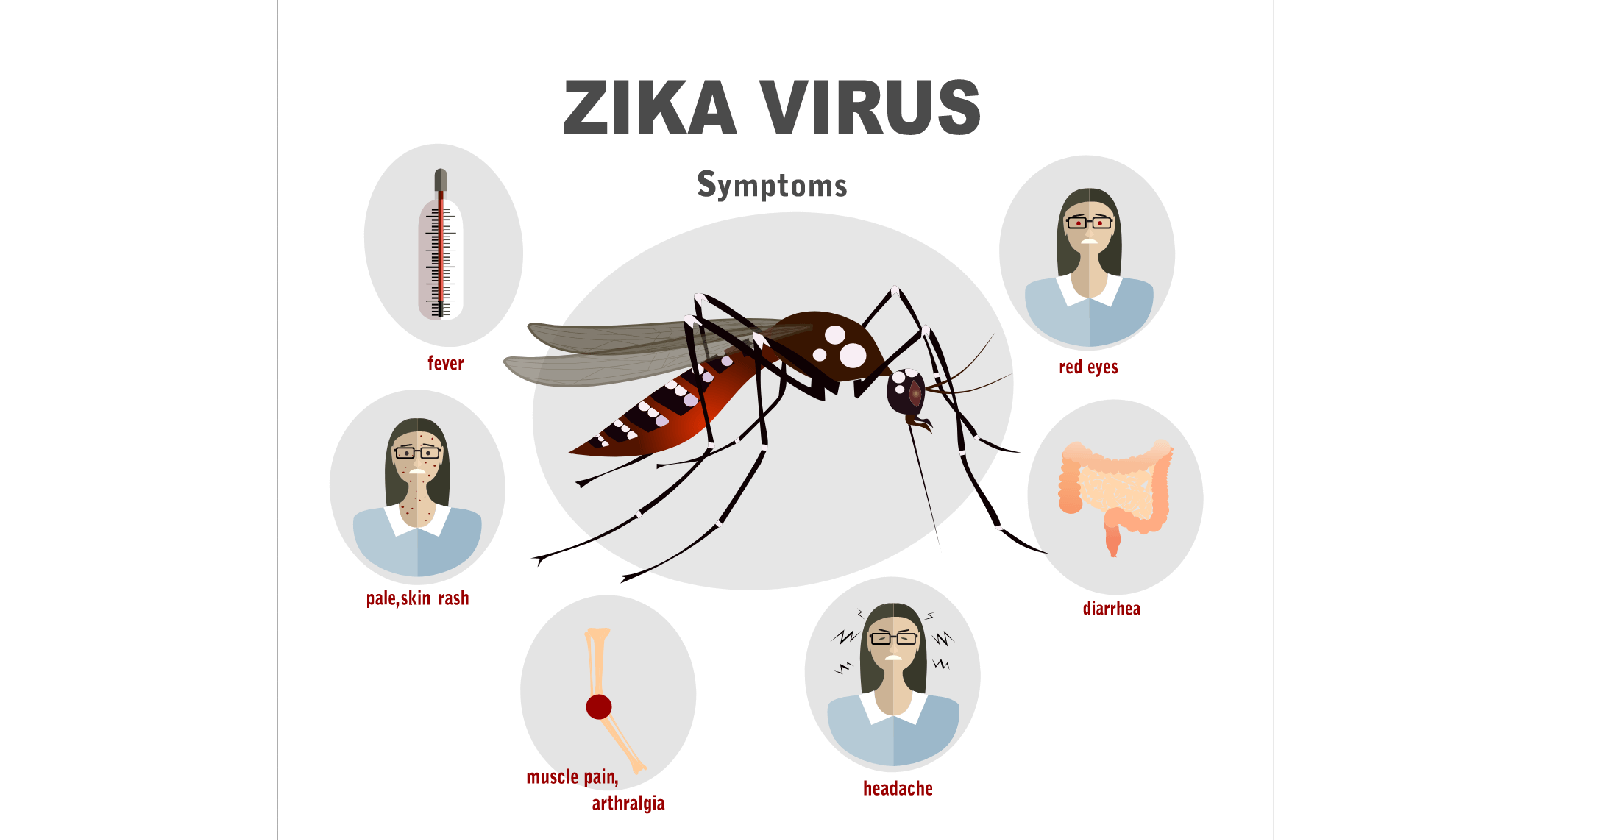 Symptoms of Zika Virus